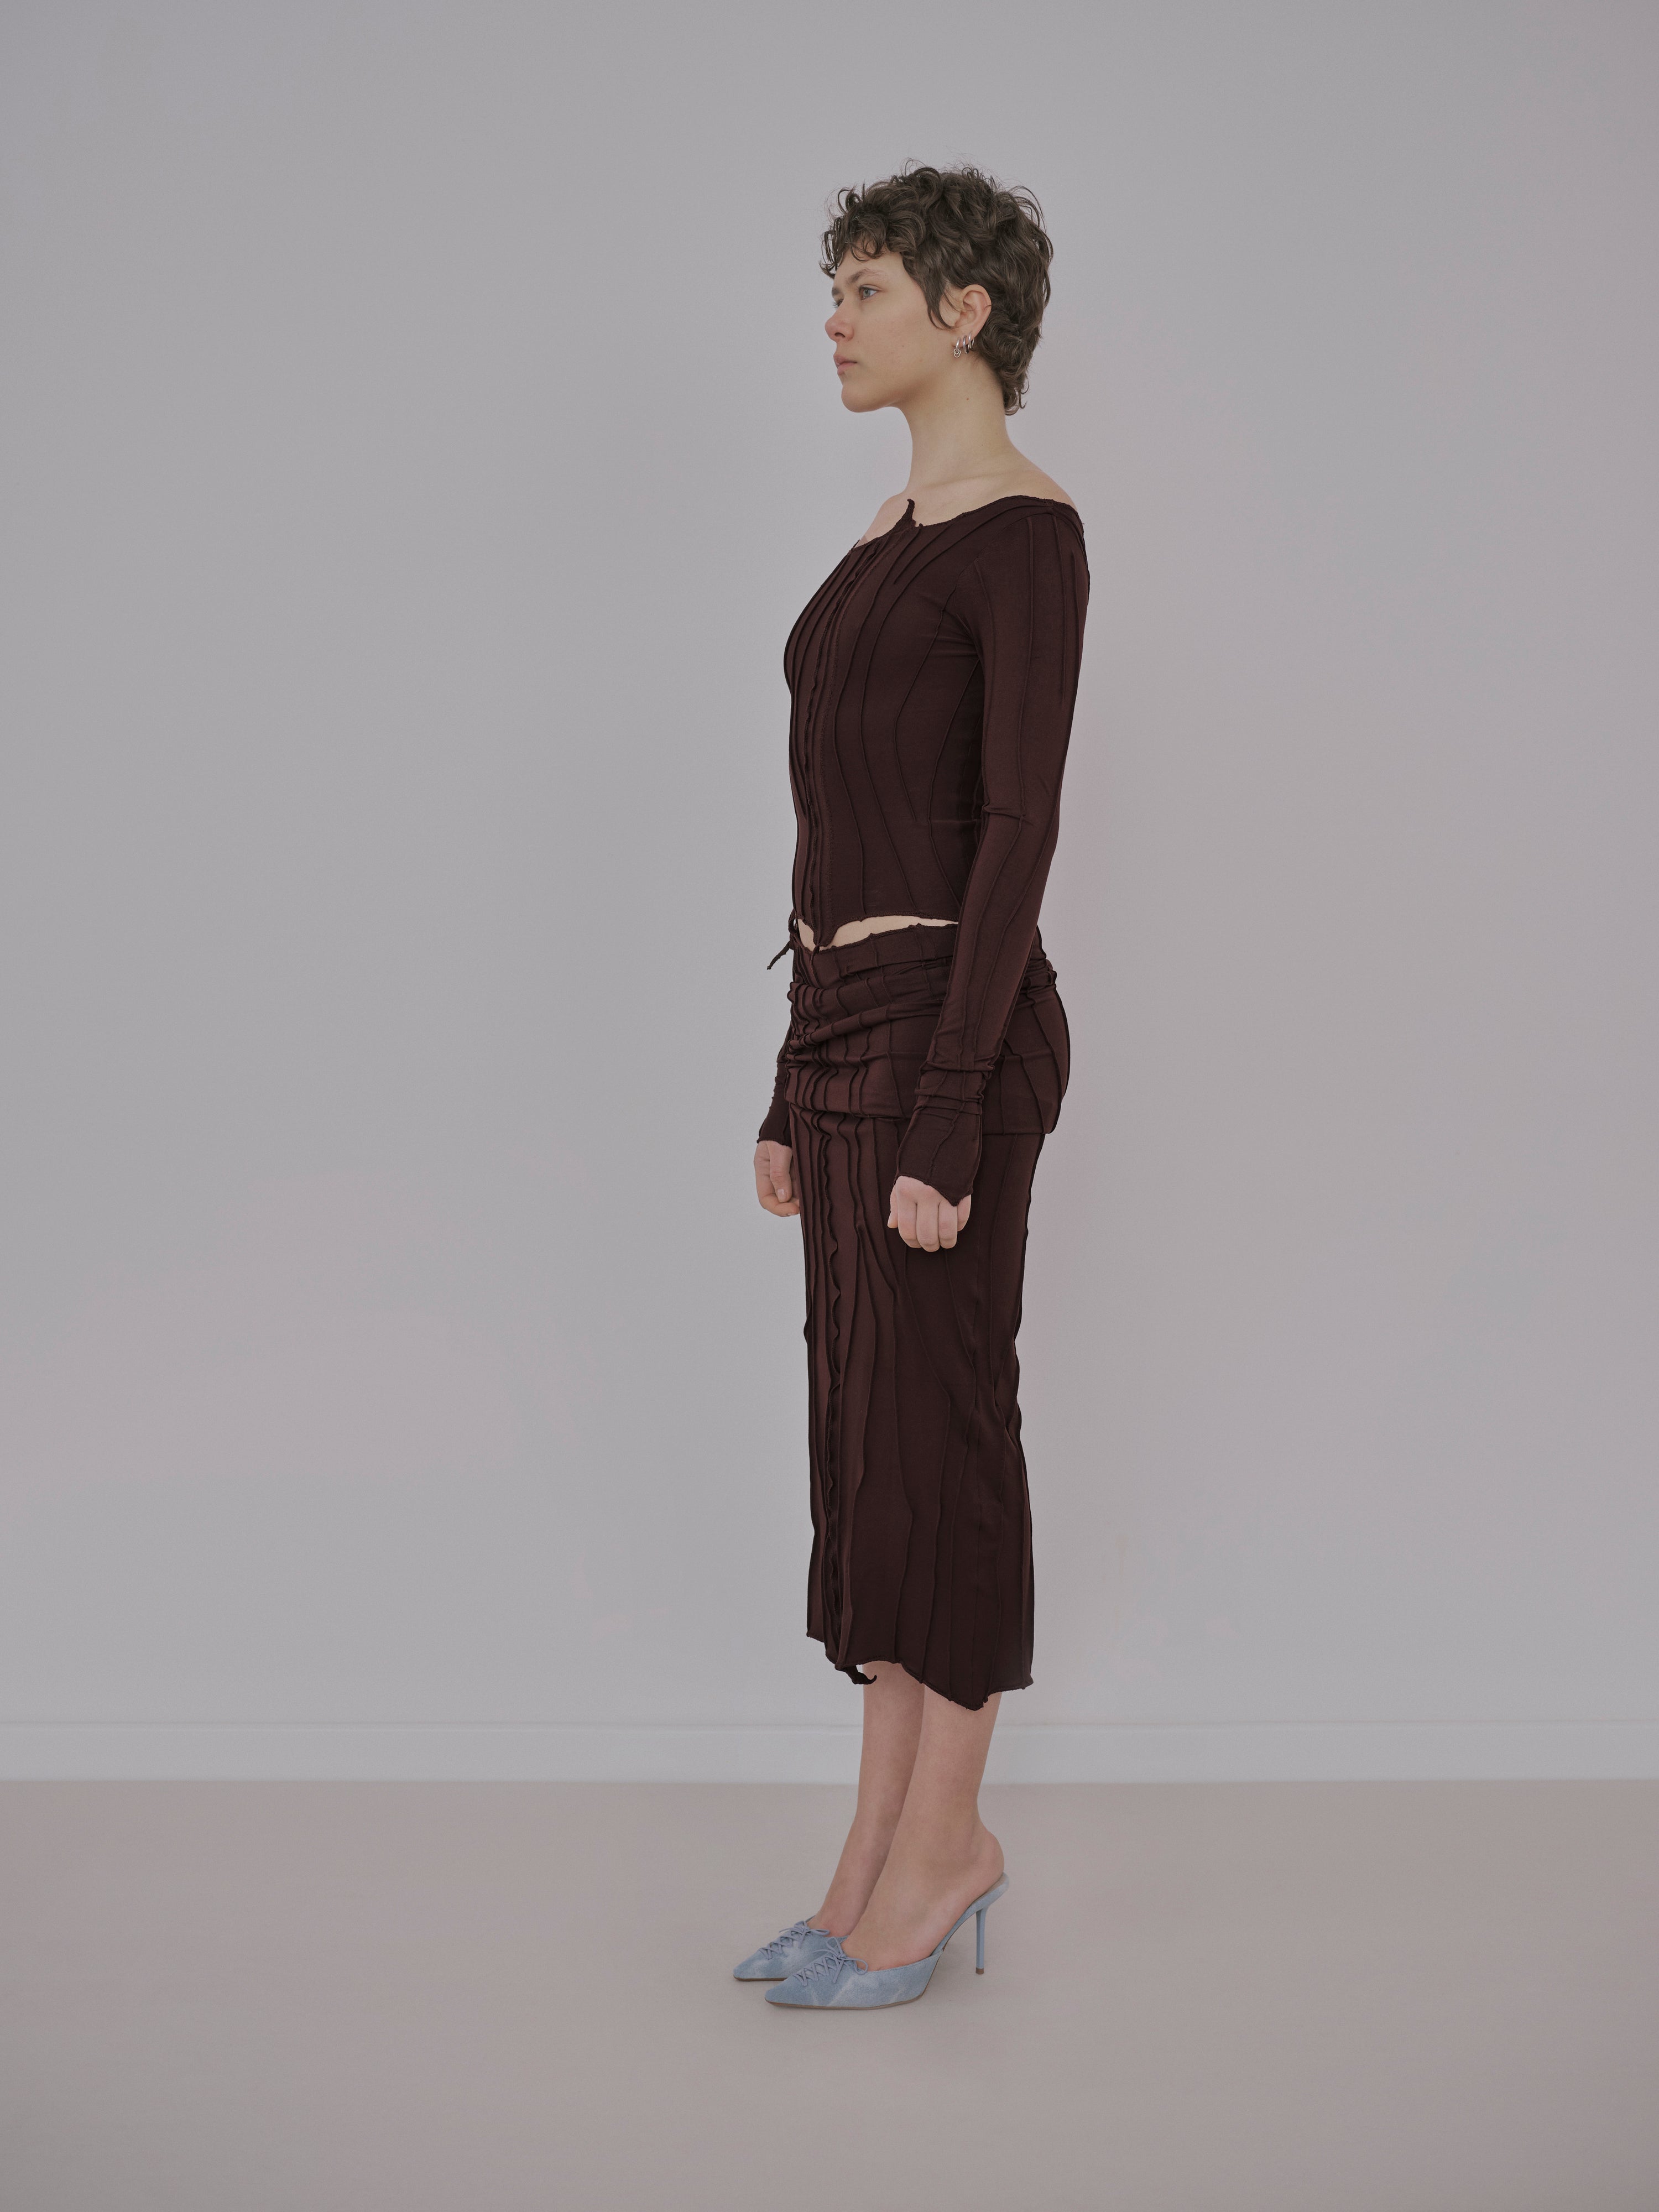 Chocolate Tube Dress/Skirt